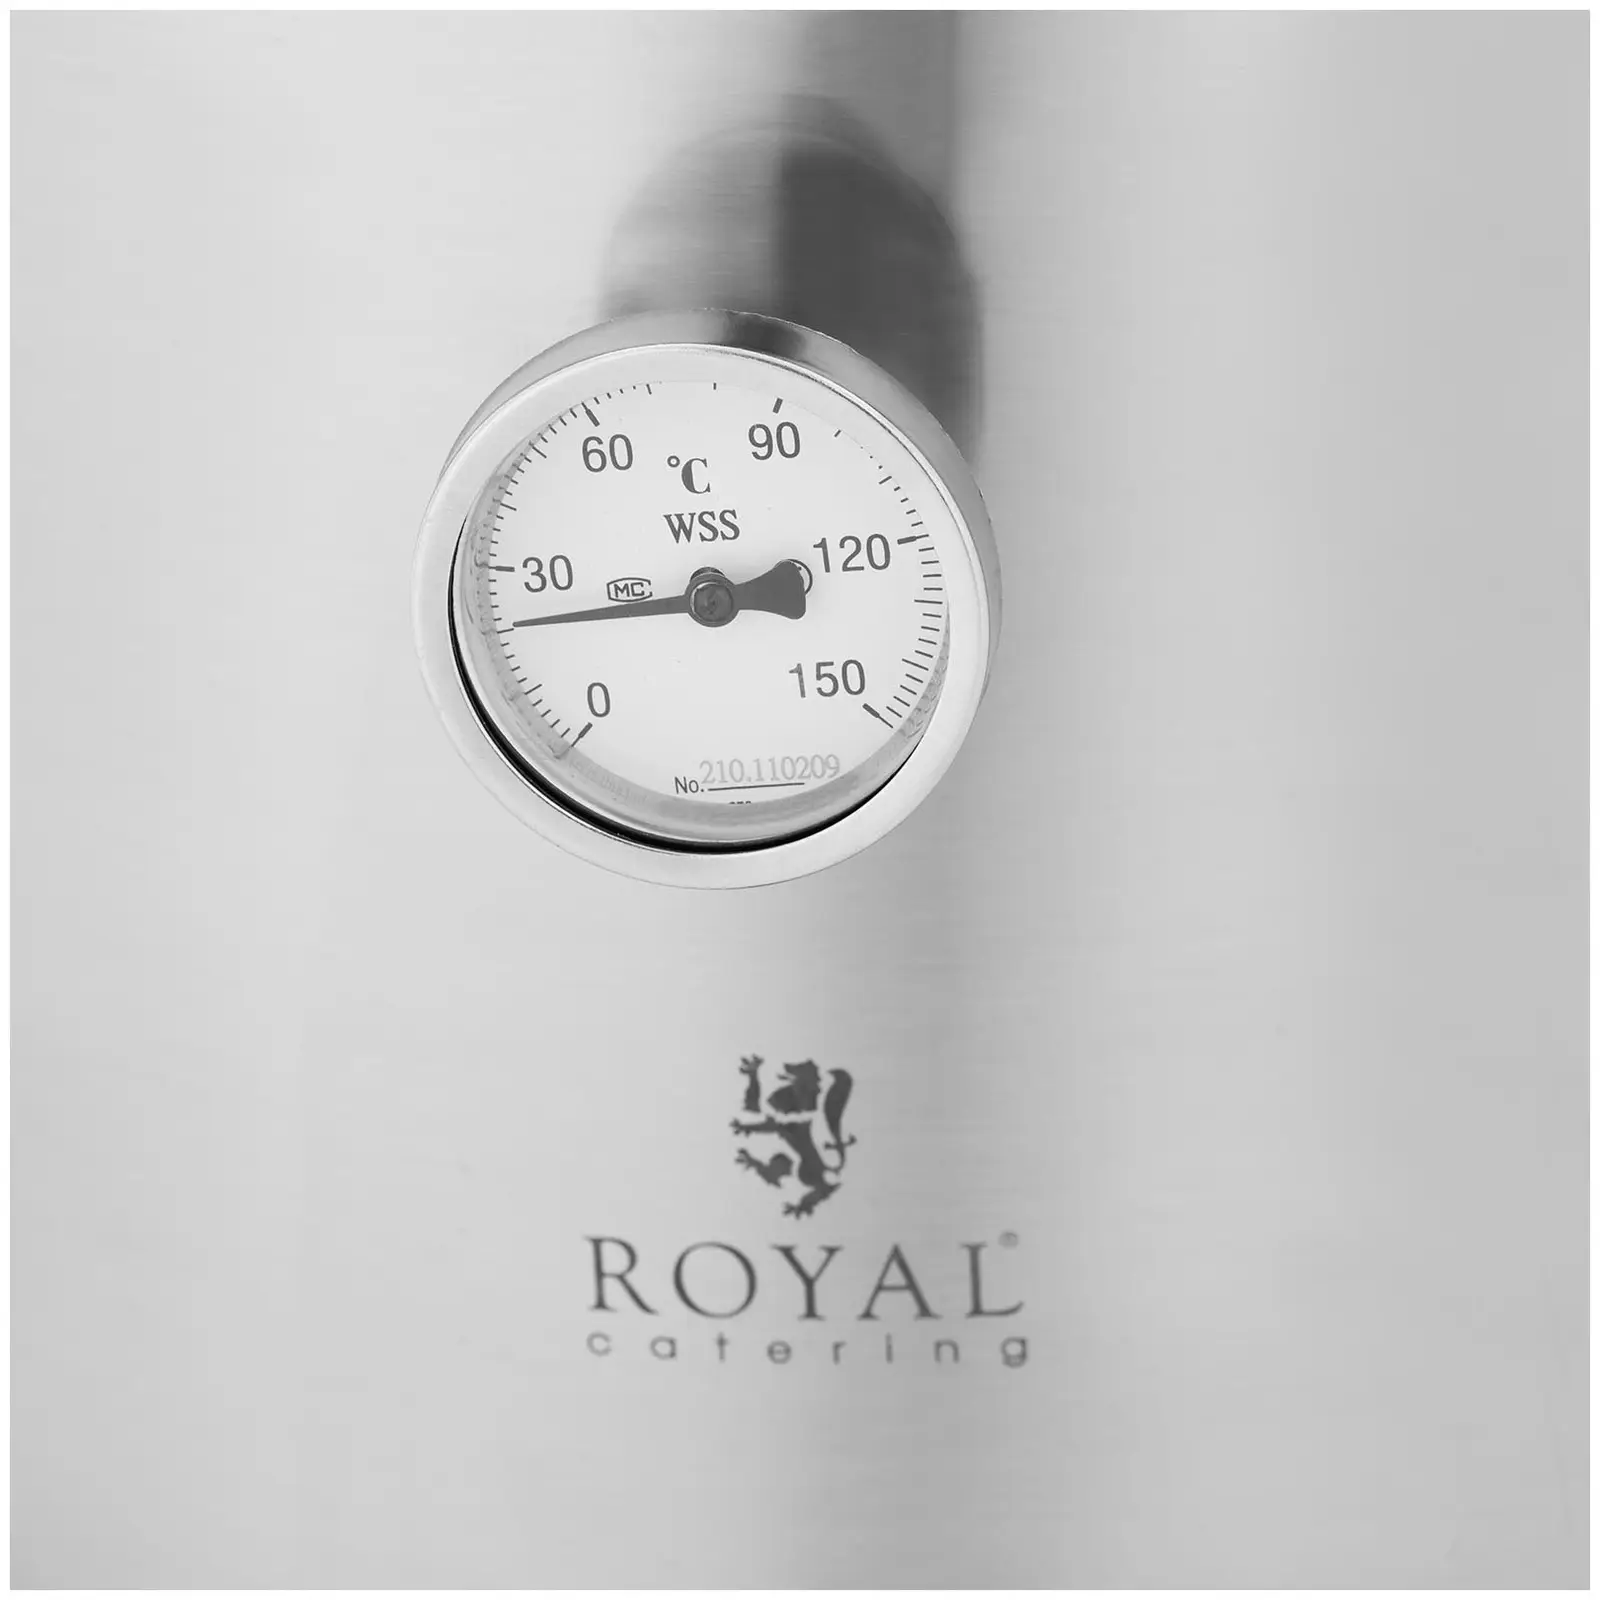 Pojemnik fermentacyjny - 30 l - 0-150°C - stal nierdzewna - Royal Catering